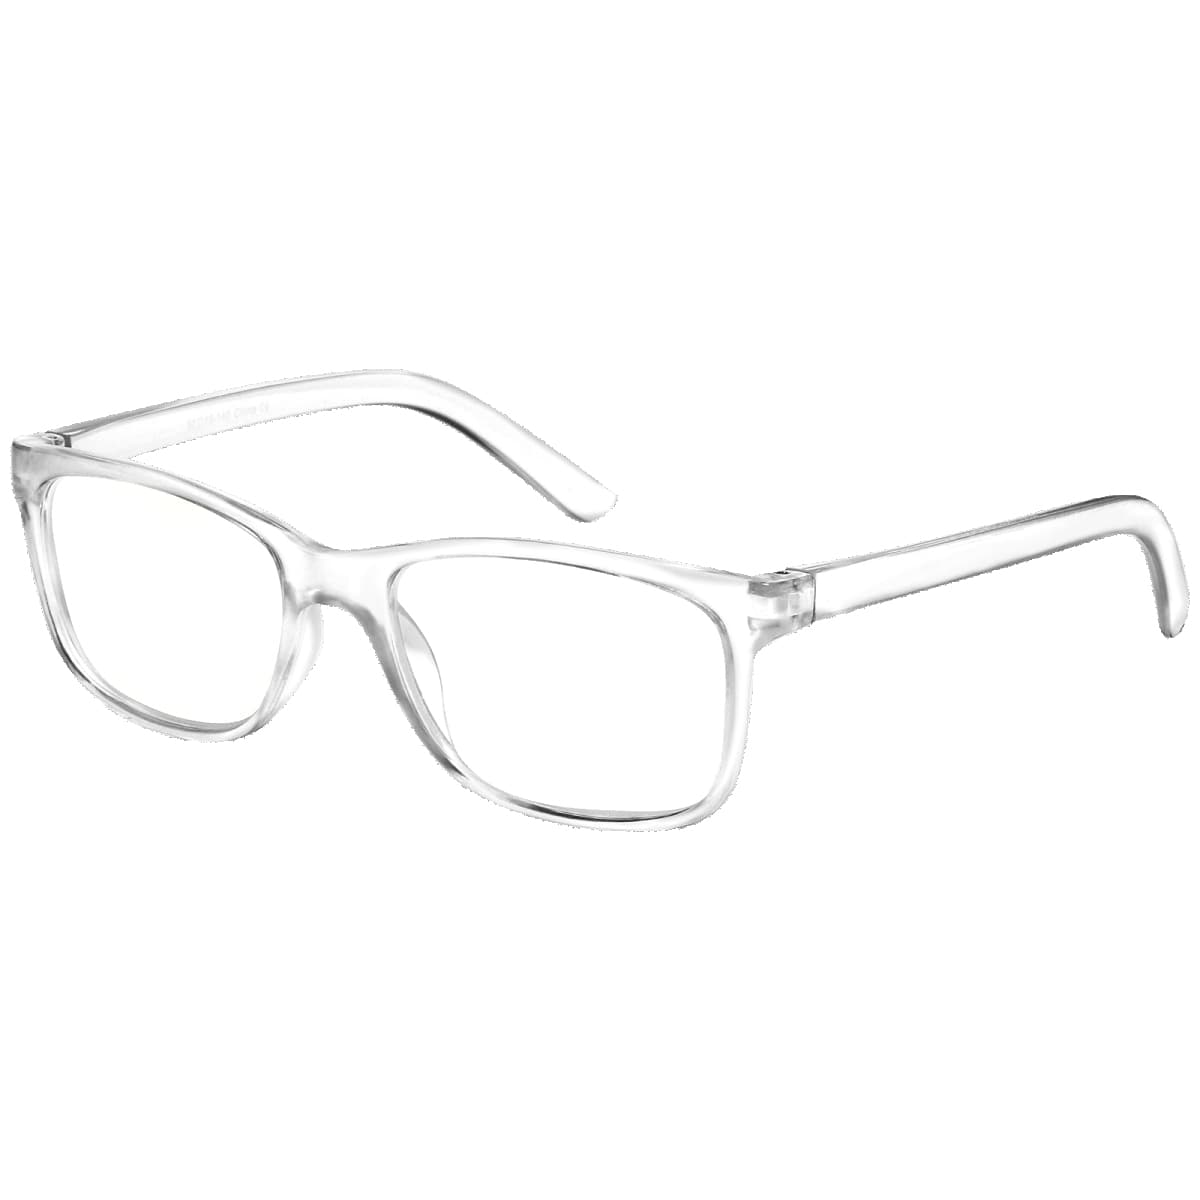 Calgary - Rectangle Transparent Reading Glasses for Men & Women